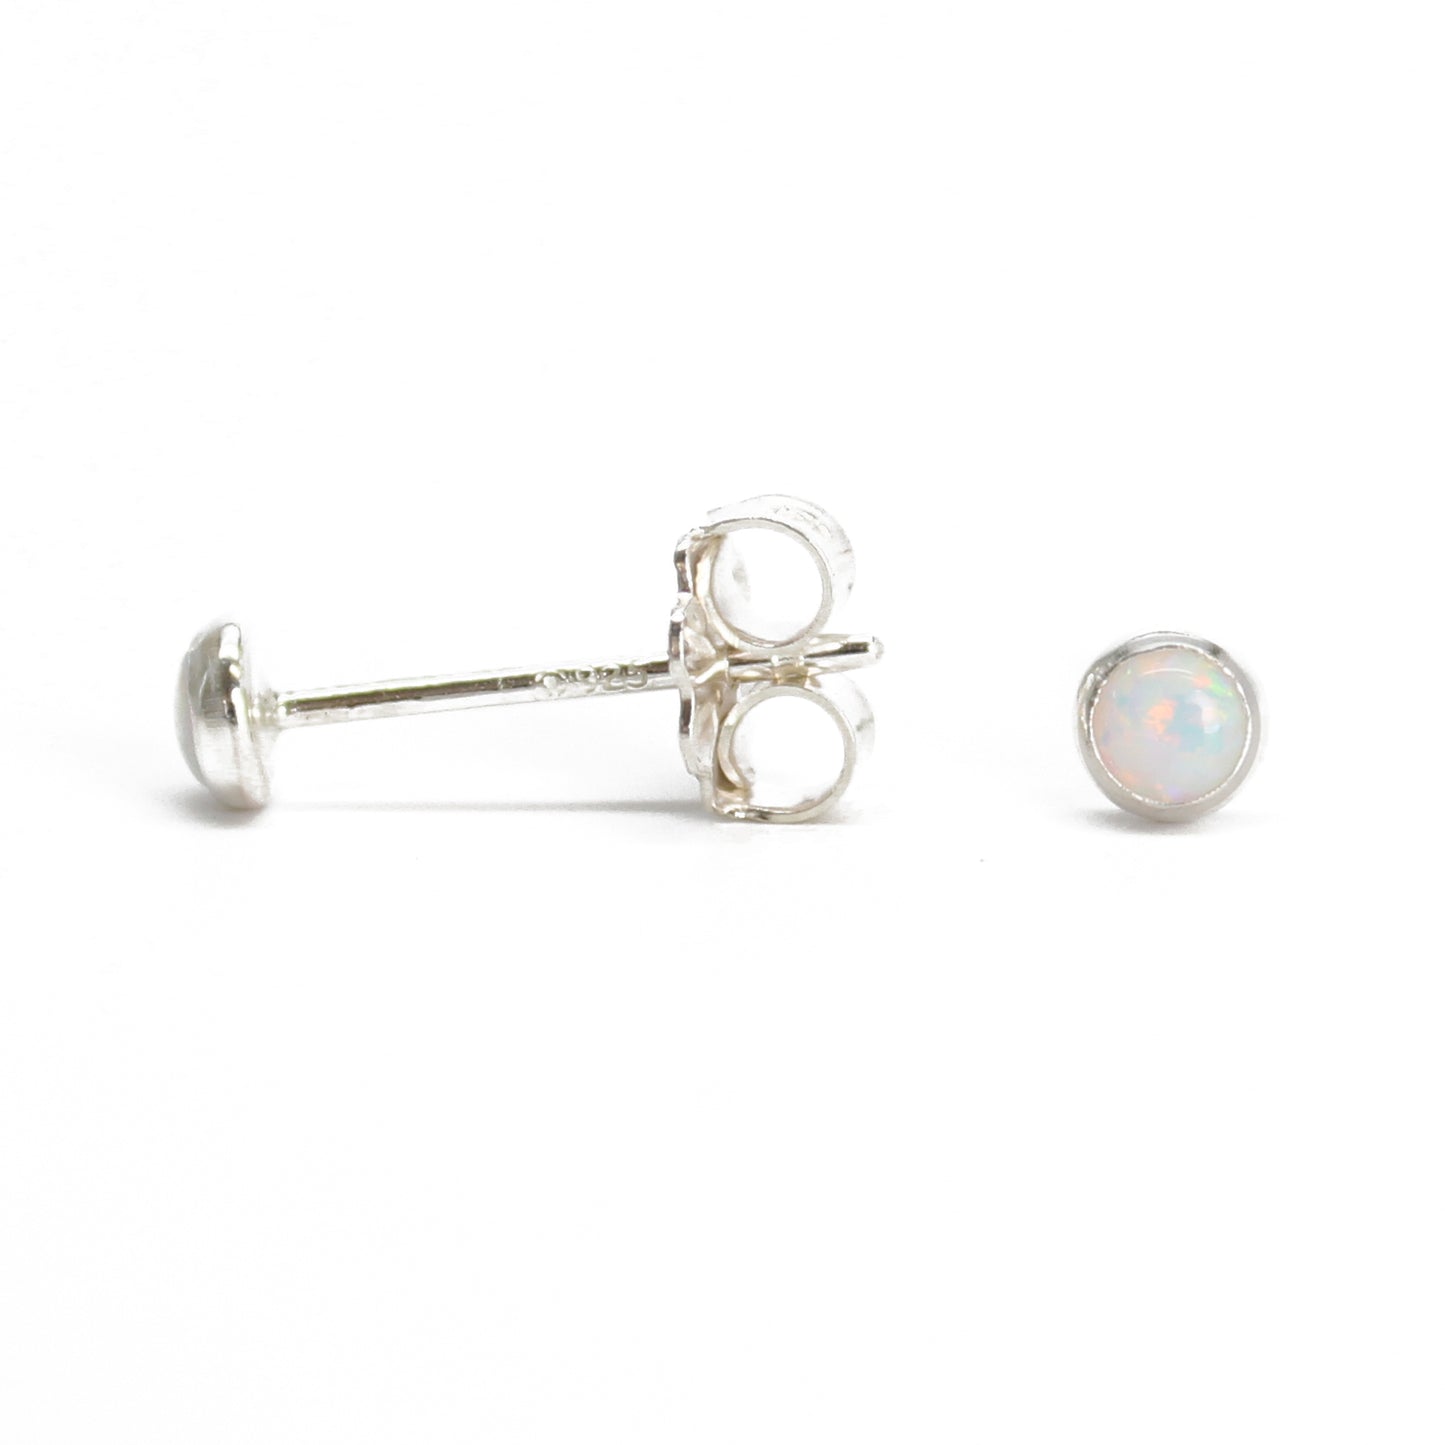 3mm Opal Stud Earrings